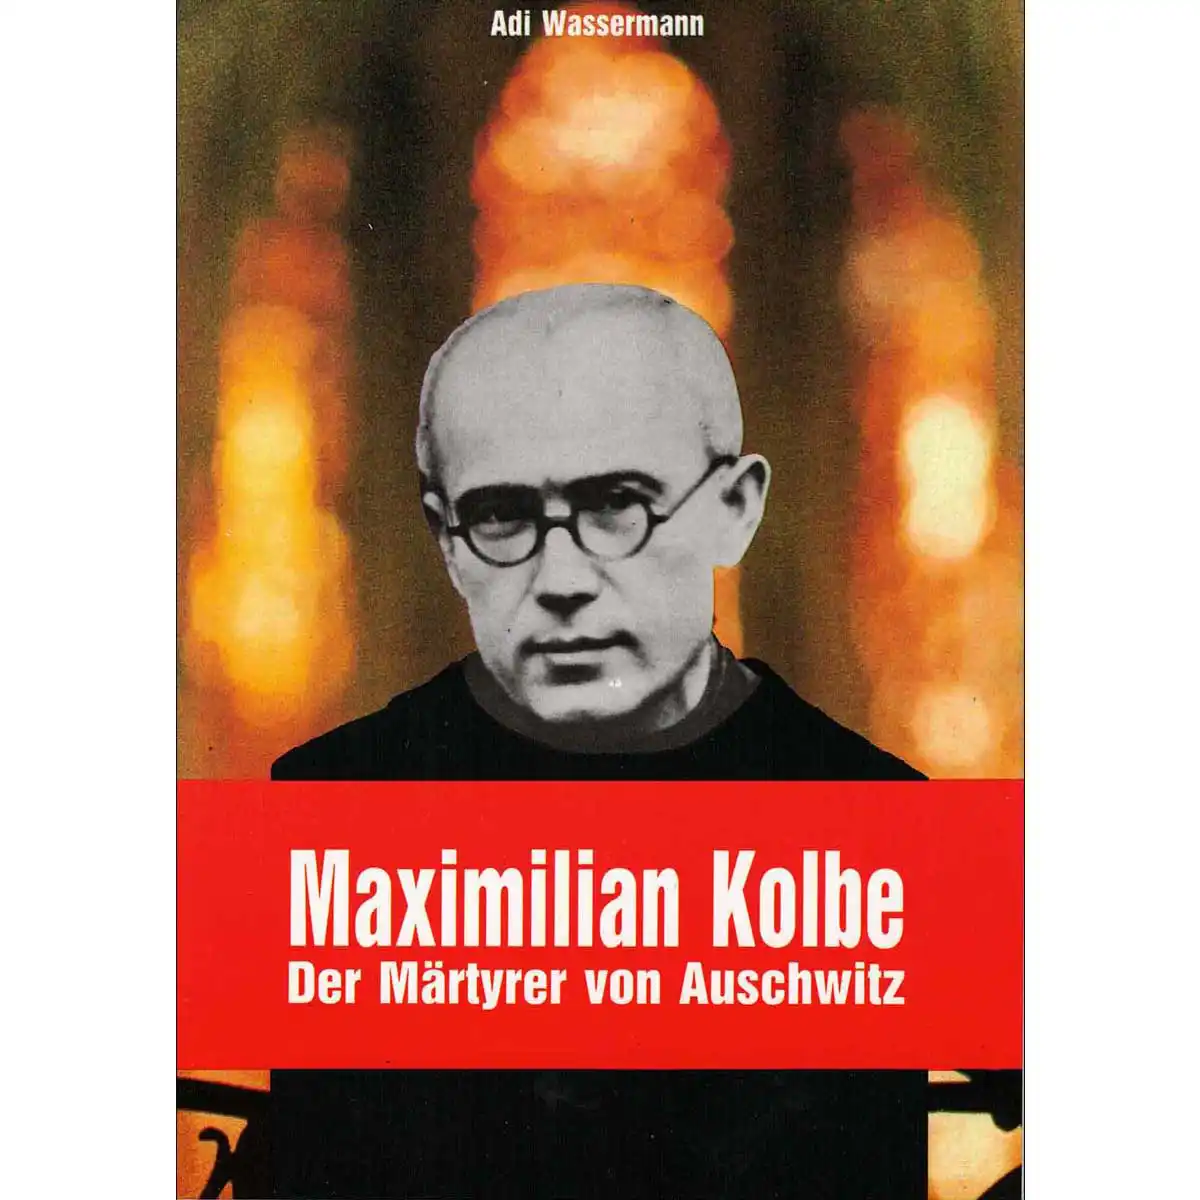 Maximilian Kolbe – Der Märtyrer von Auschwitz